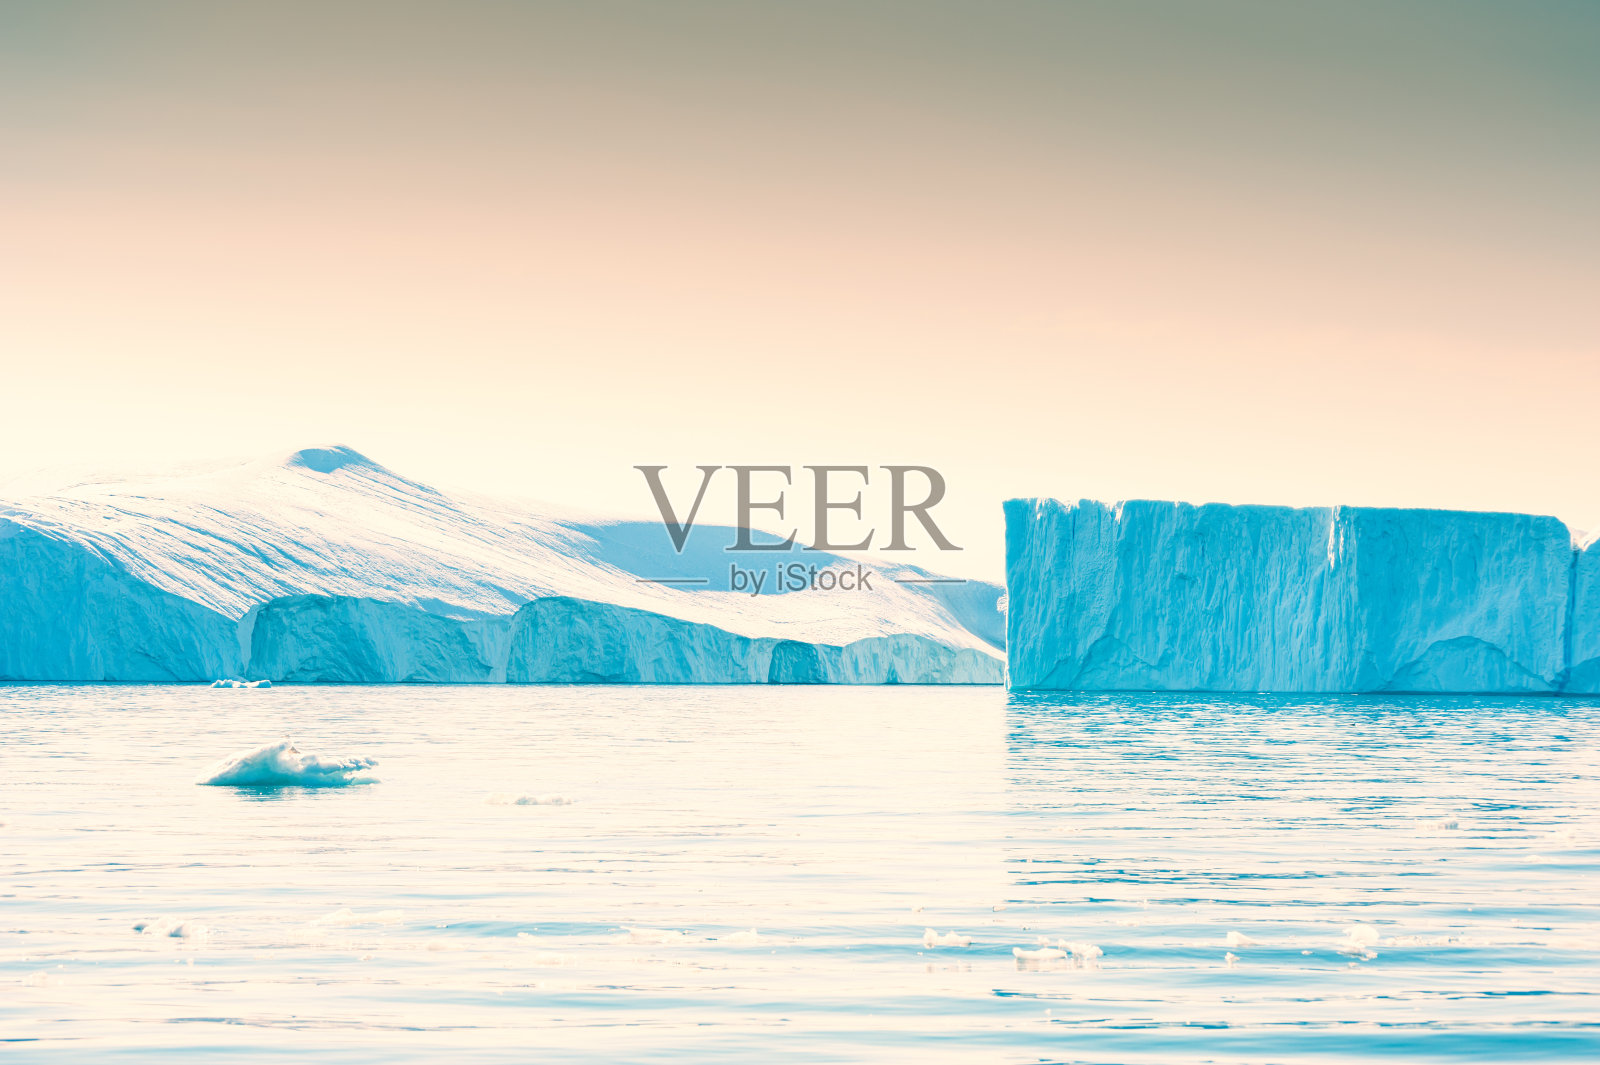 格陵兰岛的蓝色冰山照片摄影图片